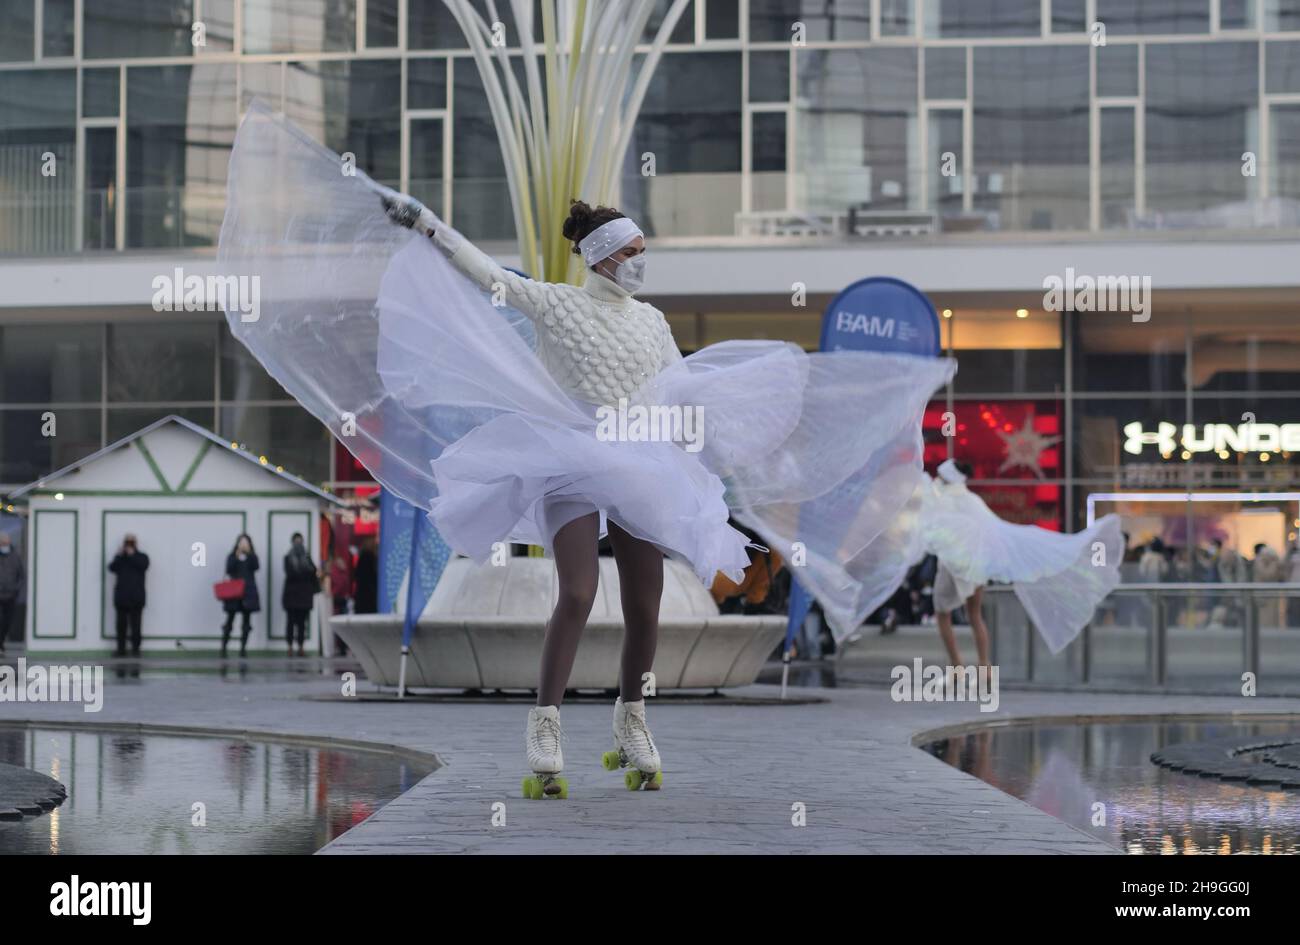 Exposición de bailarines de patinaje artístico en la plaza Gae Aulenti en Milán, Lombardía, Italia Foto de stock